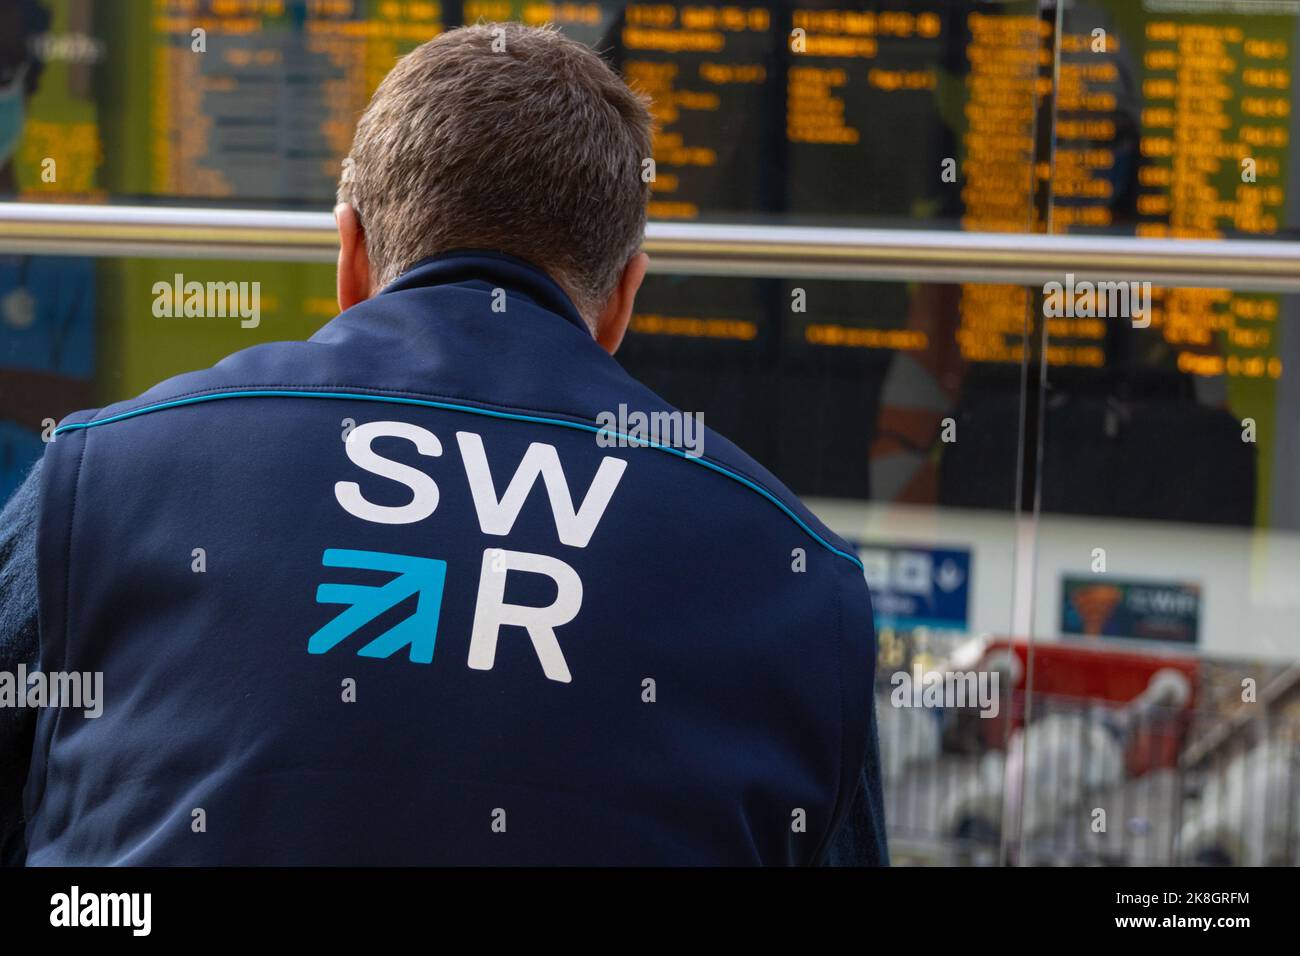 SWR, logo des chemins de fer du sud-ouest sur la veste de l'employé devant l'affichage de l'heure de la gare de waterloo, londres, royaume-uni Banque D'Images